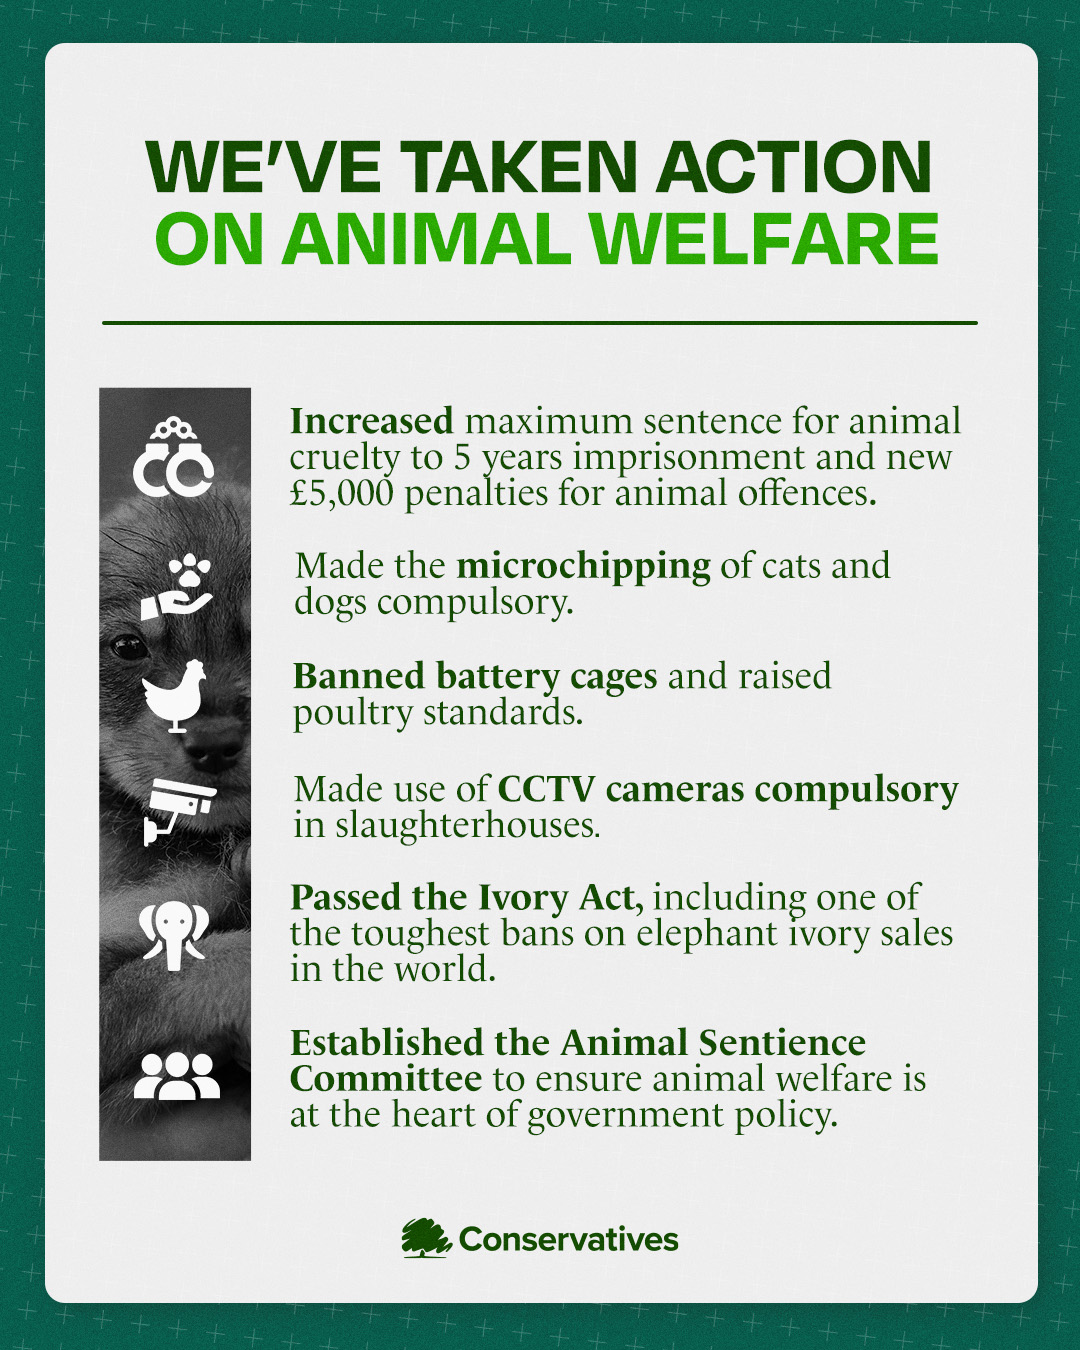 Action taken on animal welfare